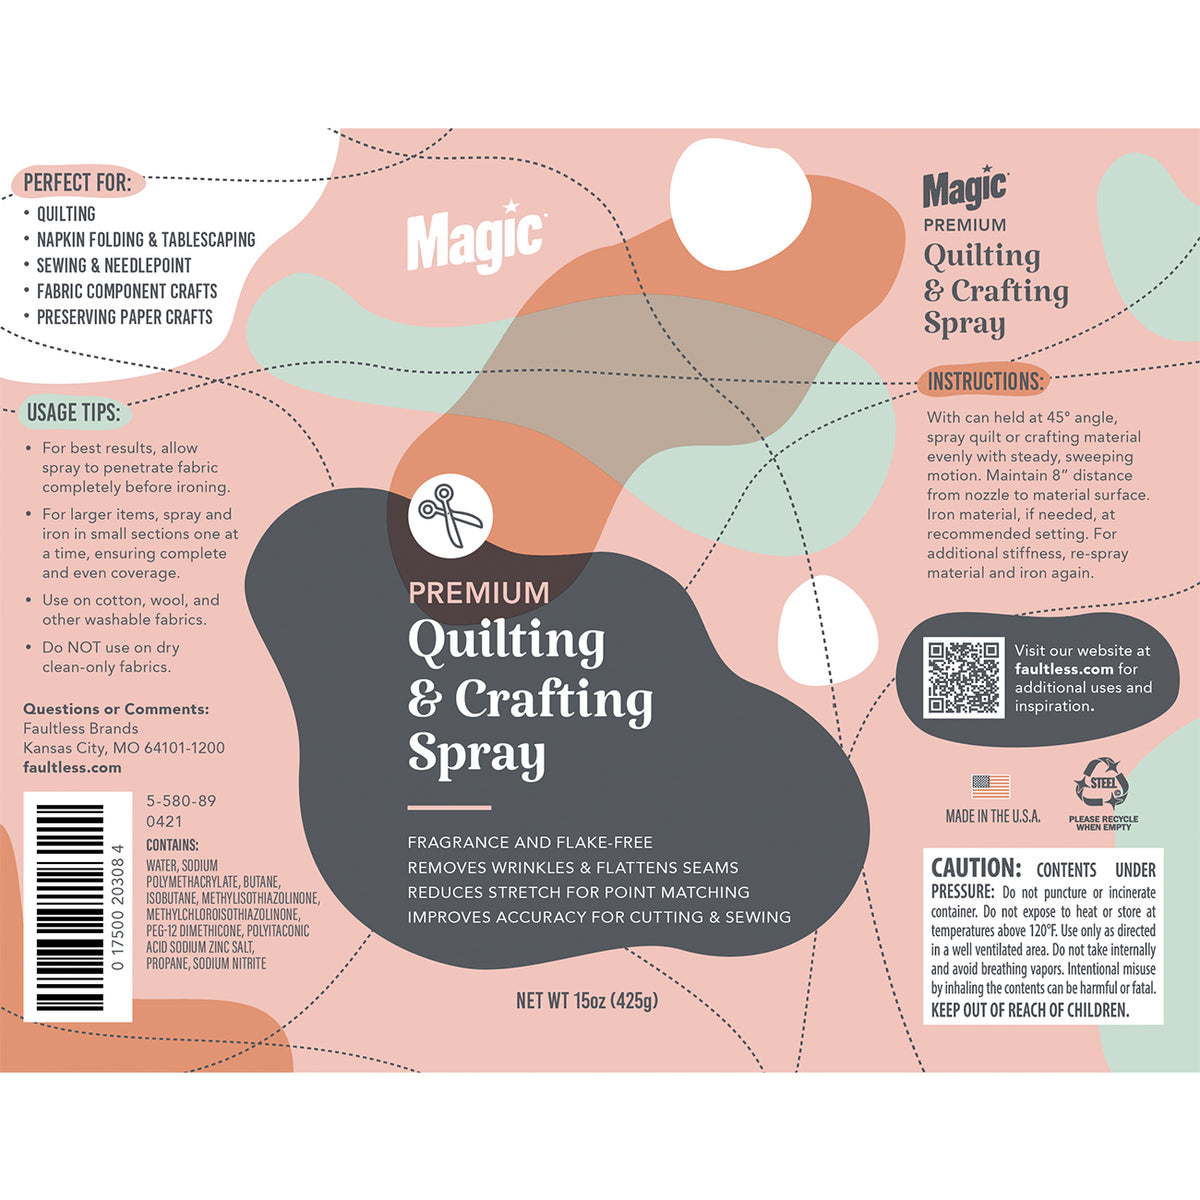 Magic Premium Quilting & Crafting Gallon Refill - Magic Fabric Care